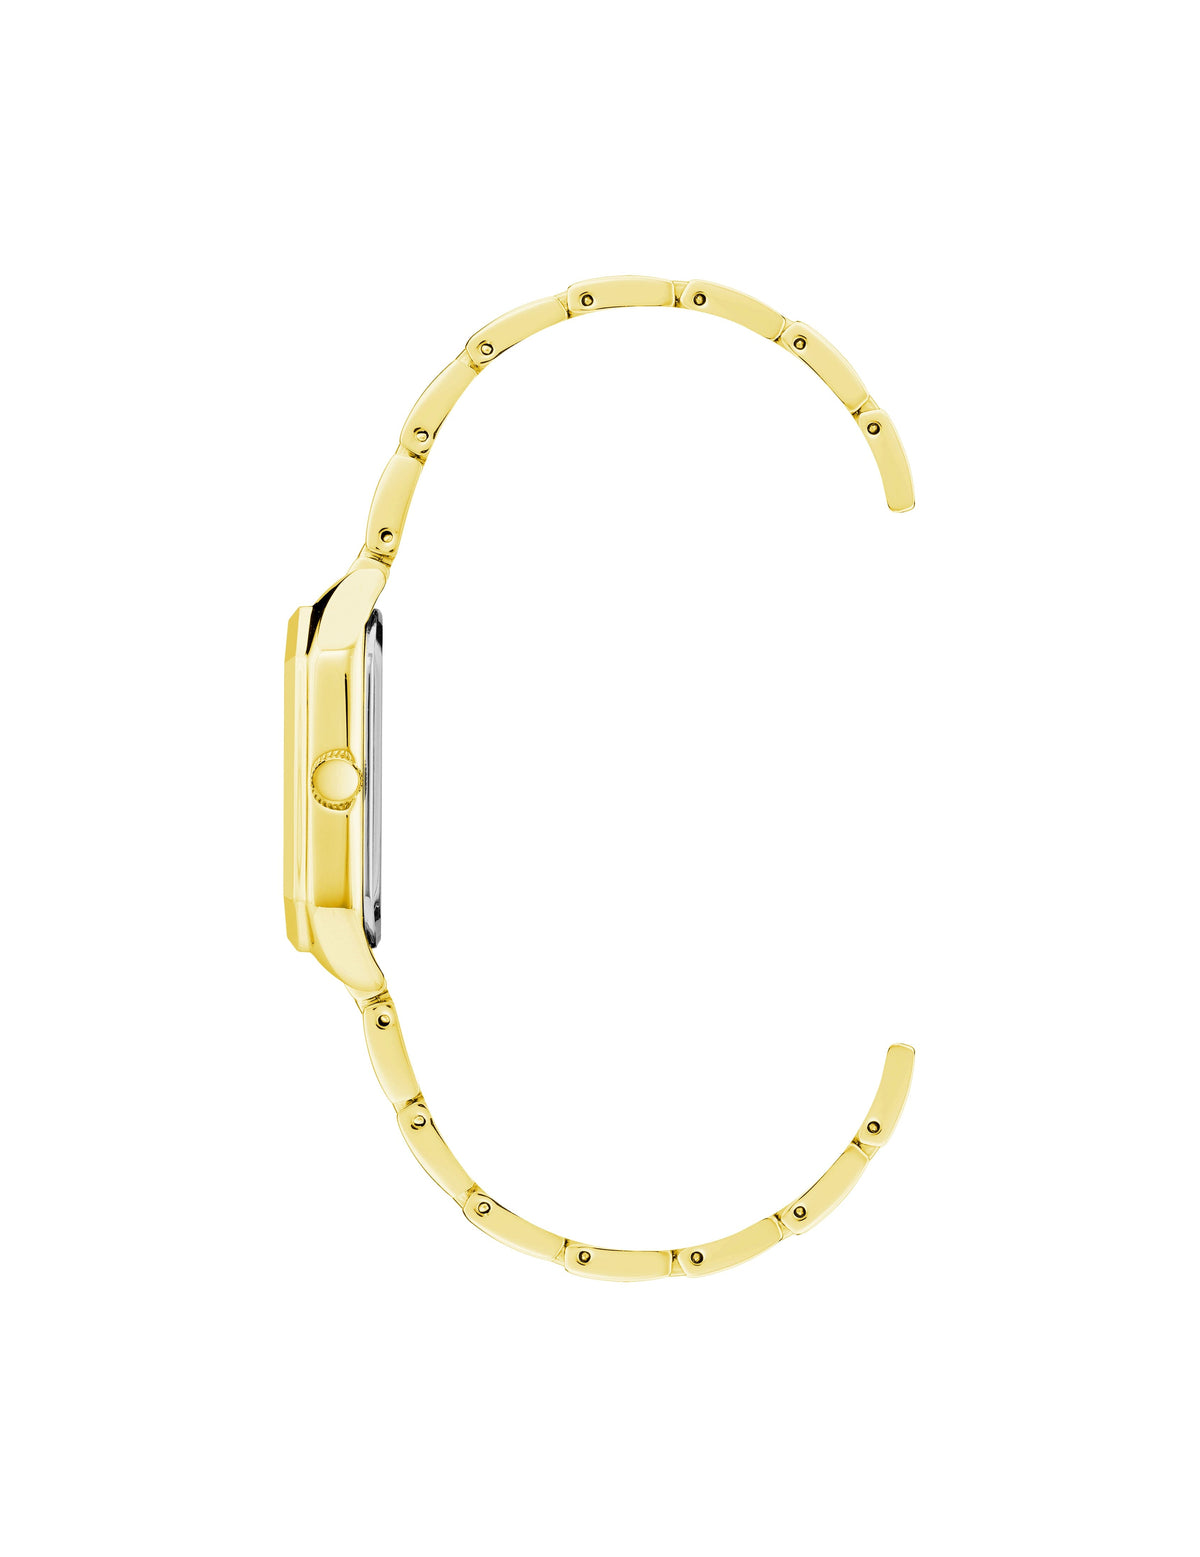 Anne Klein  Octagonal Shaped Metal Bracelet Watch